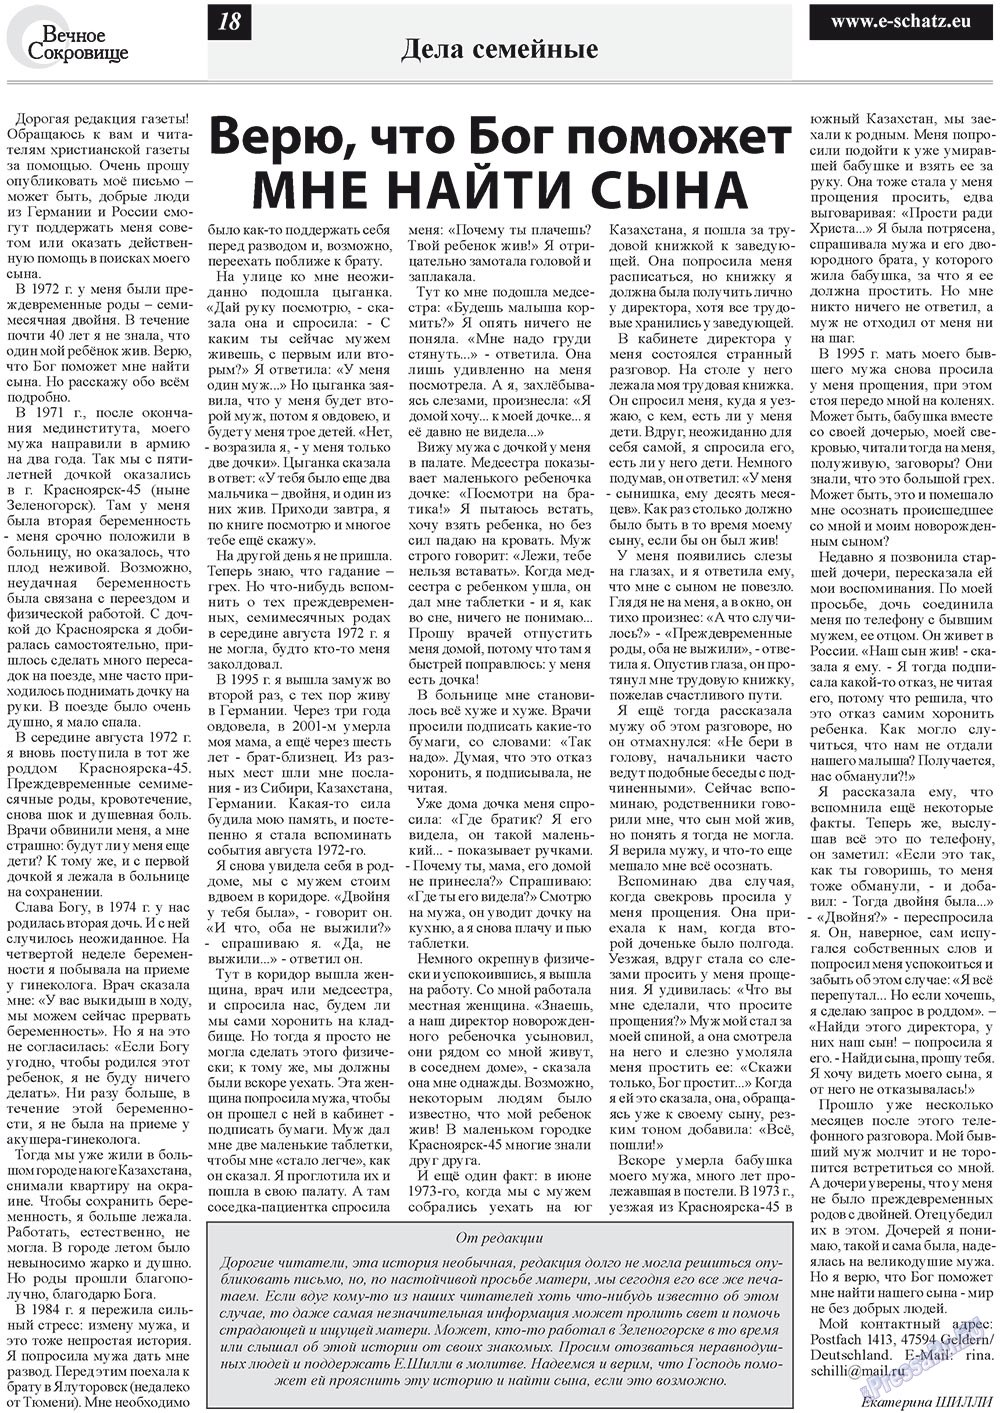 Вечное сокровище, газета. 2012 №4 стр.18